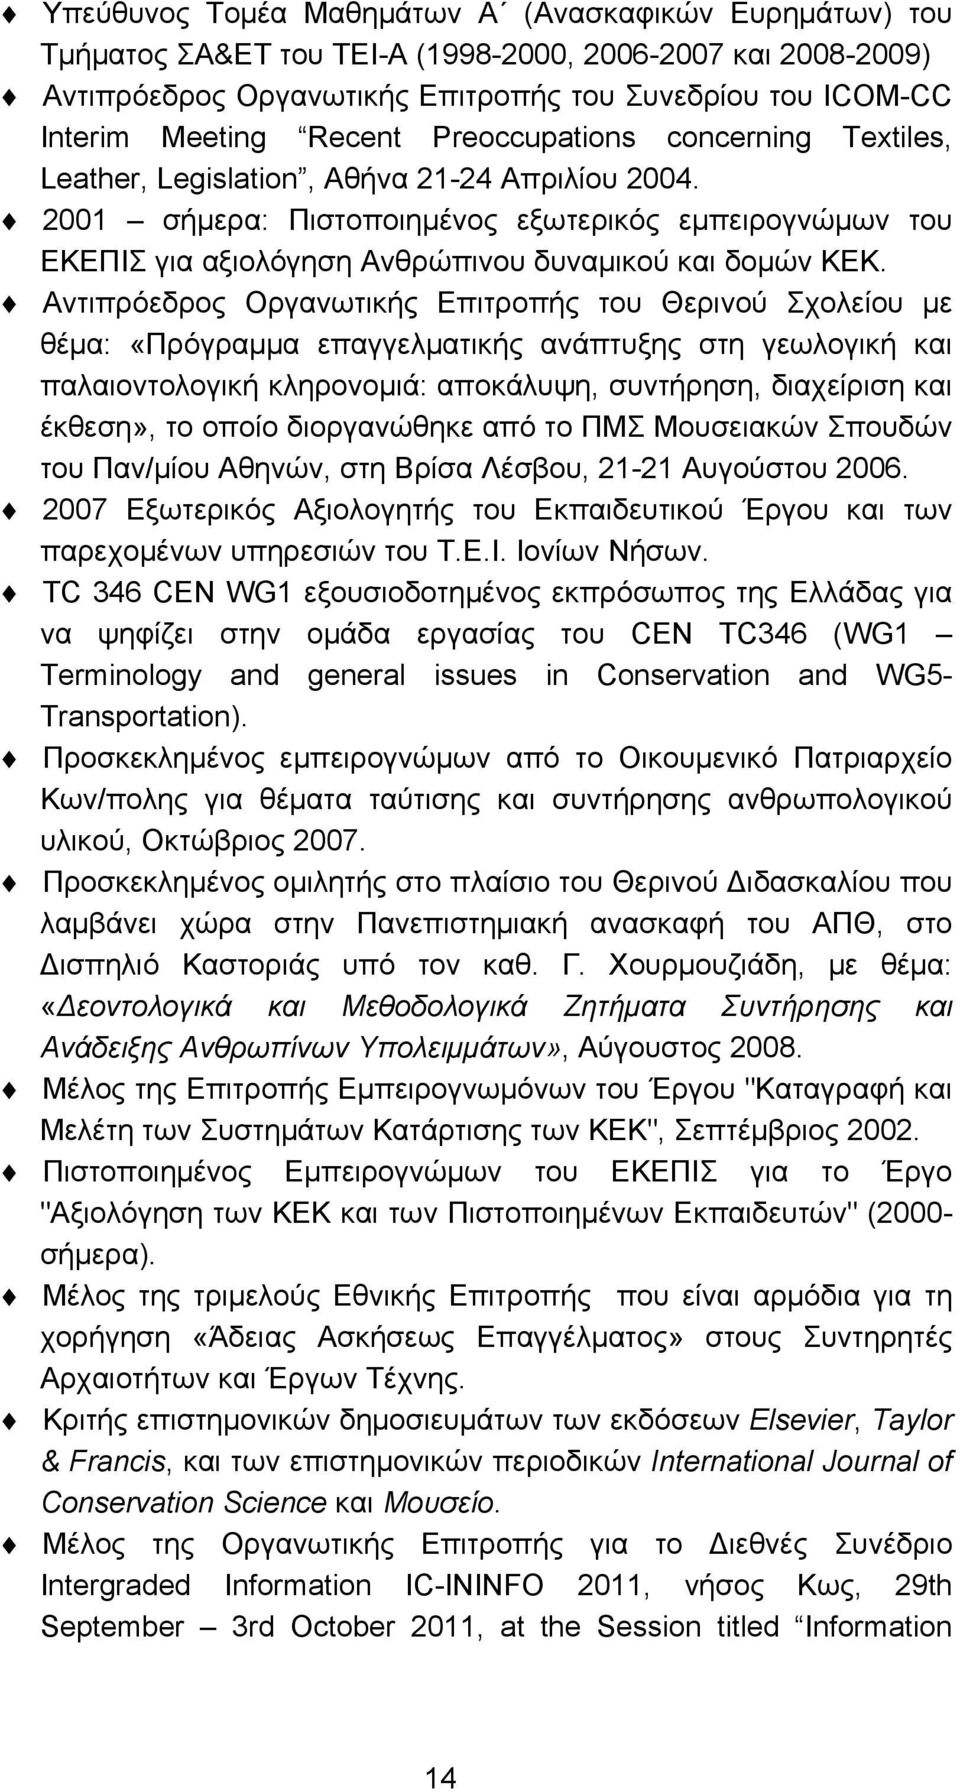 2001 σήμερα: Πιστοποιημένος εξωτερικός εμπειρογνώμων του ΕΚΕΠΙΣ για αξιολόγηση Ανθρώπινου δυναμικού και δομών ΚΕΚ.